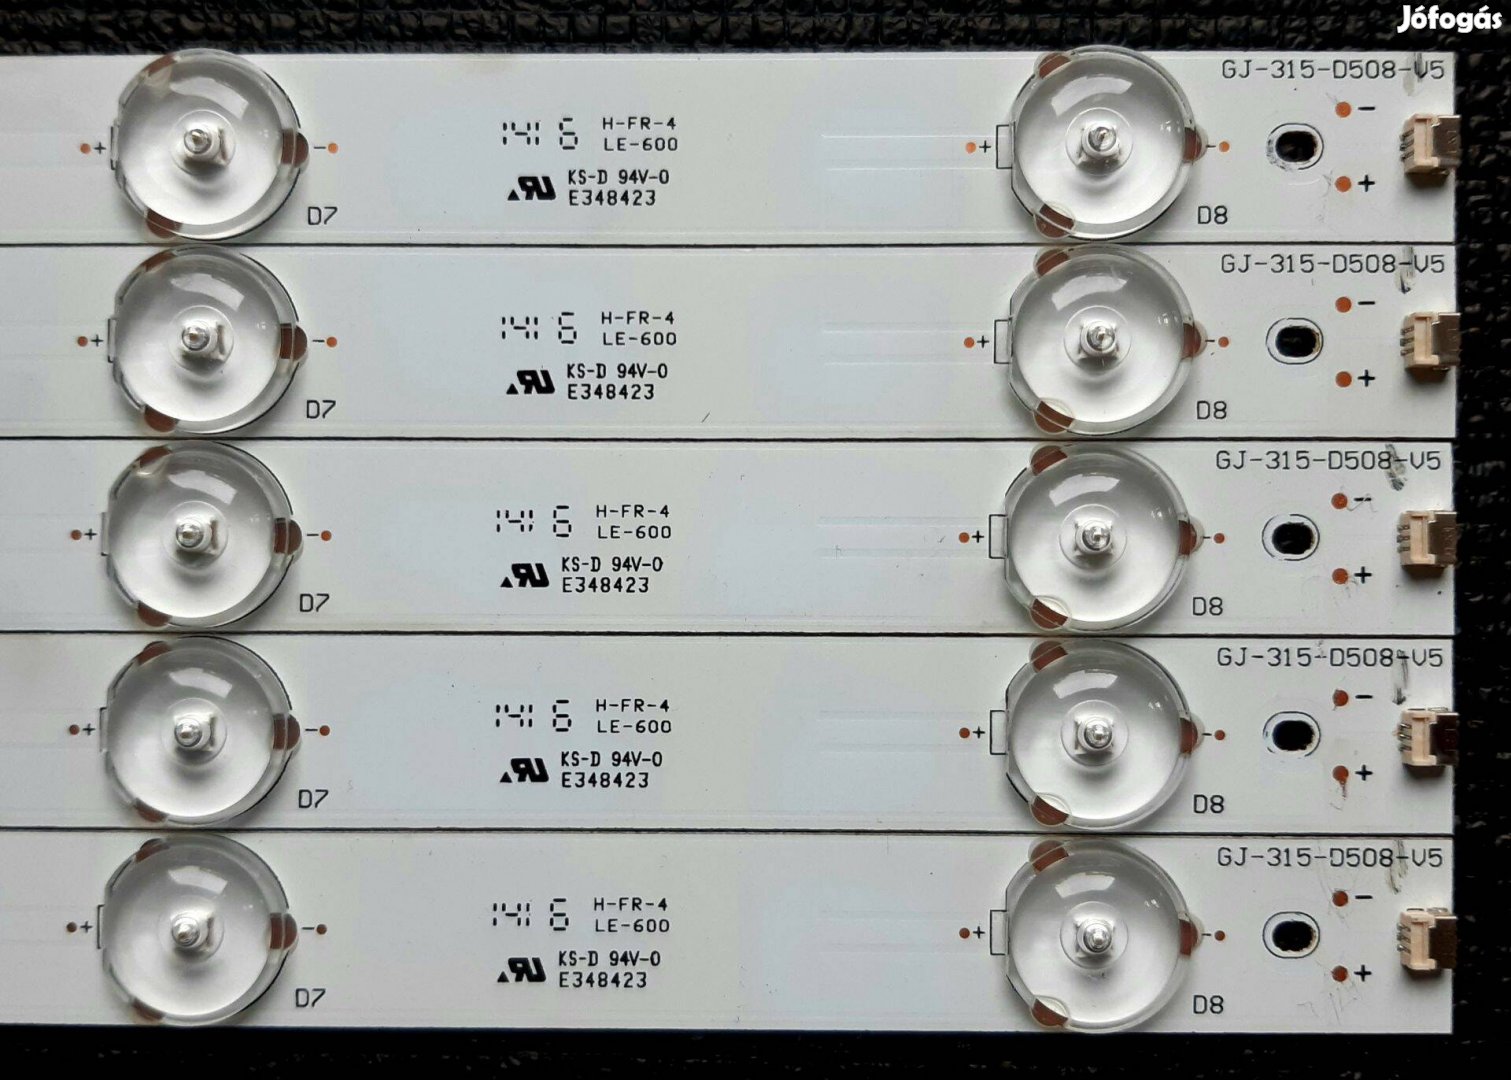 GJ-315-D508-V5, Panasonic TX-32AS500E LED háttérvilágítás